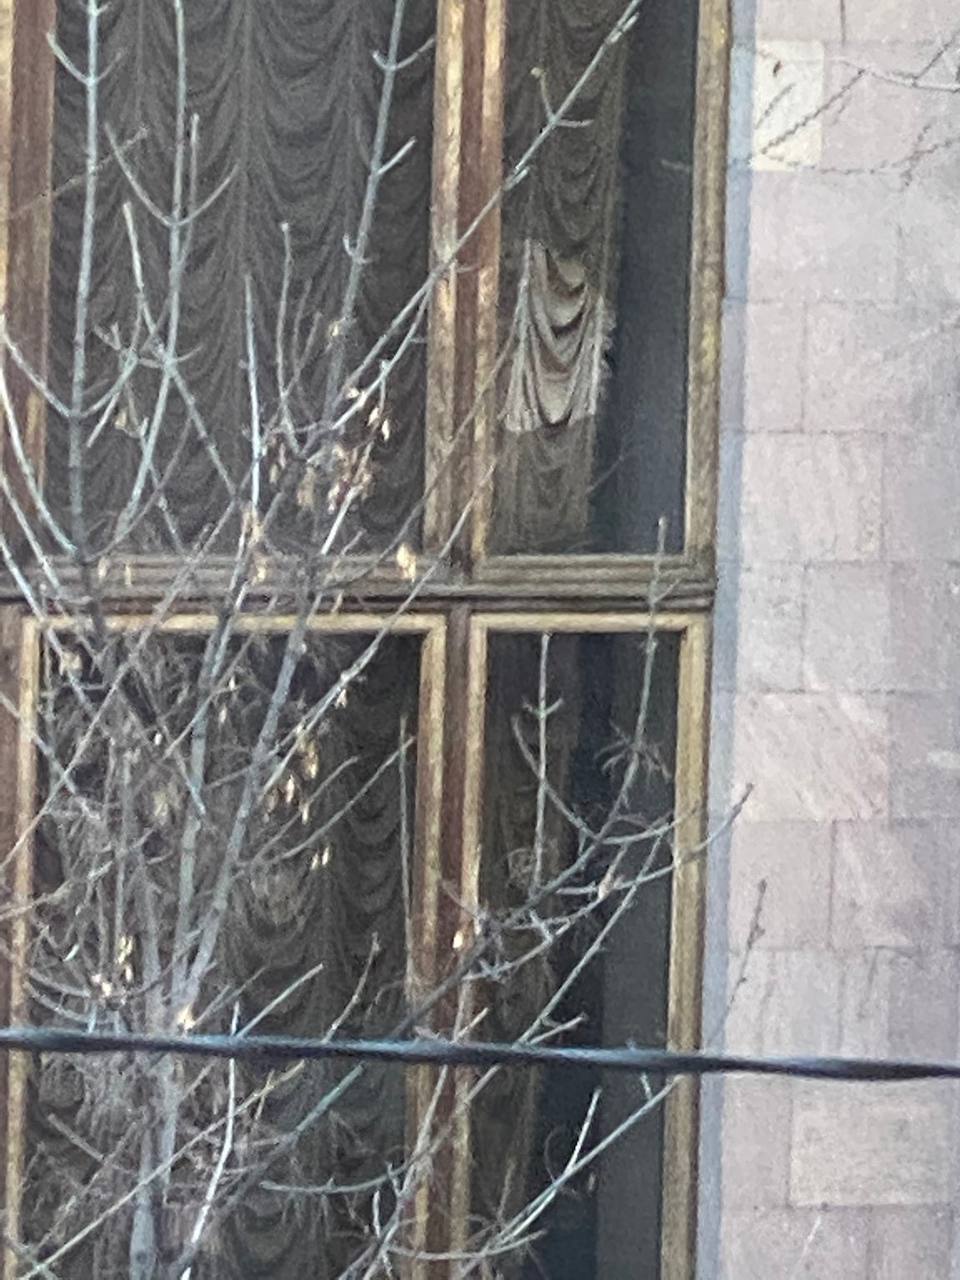 Родственник без вести пропавшего военнослужащего разбил камнем окно здания правительства